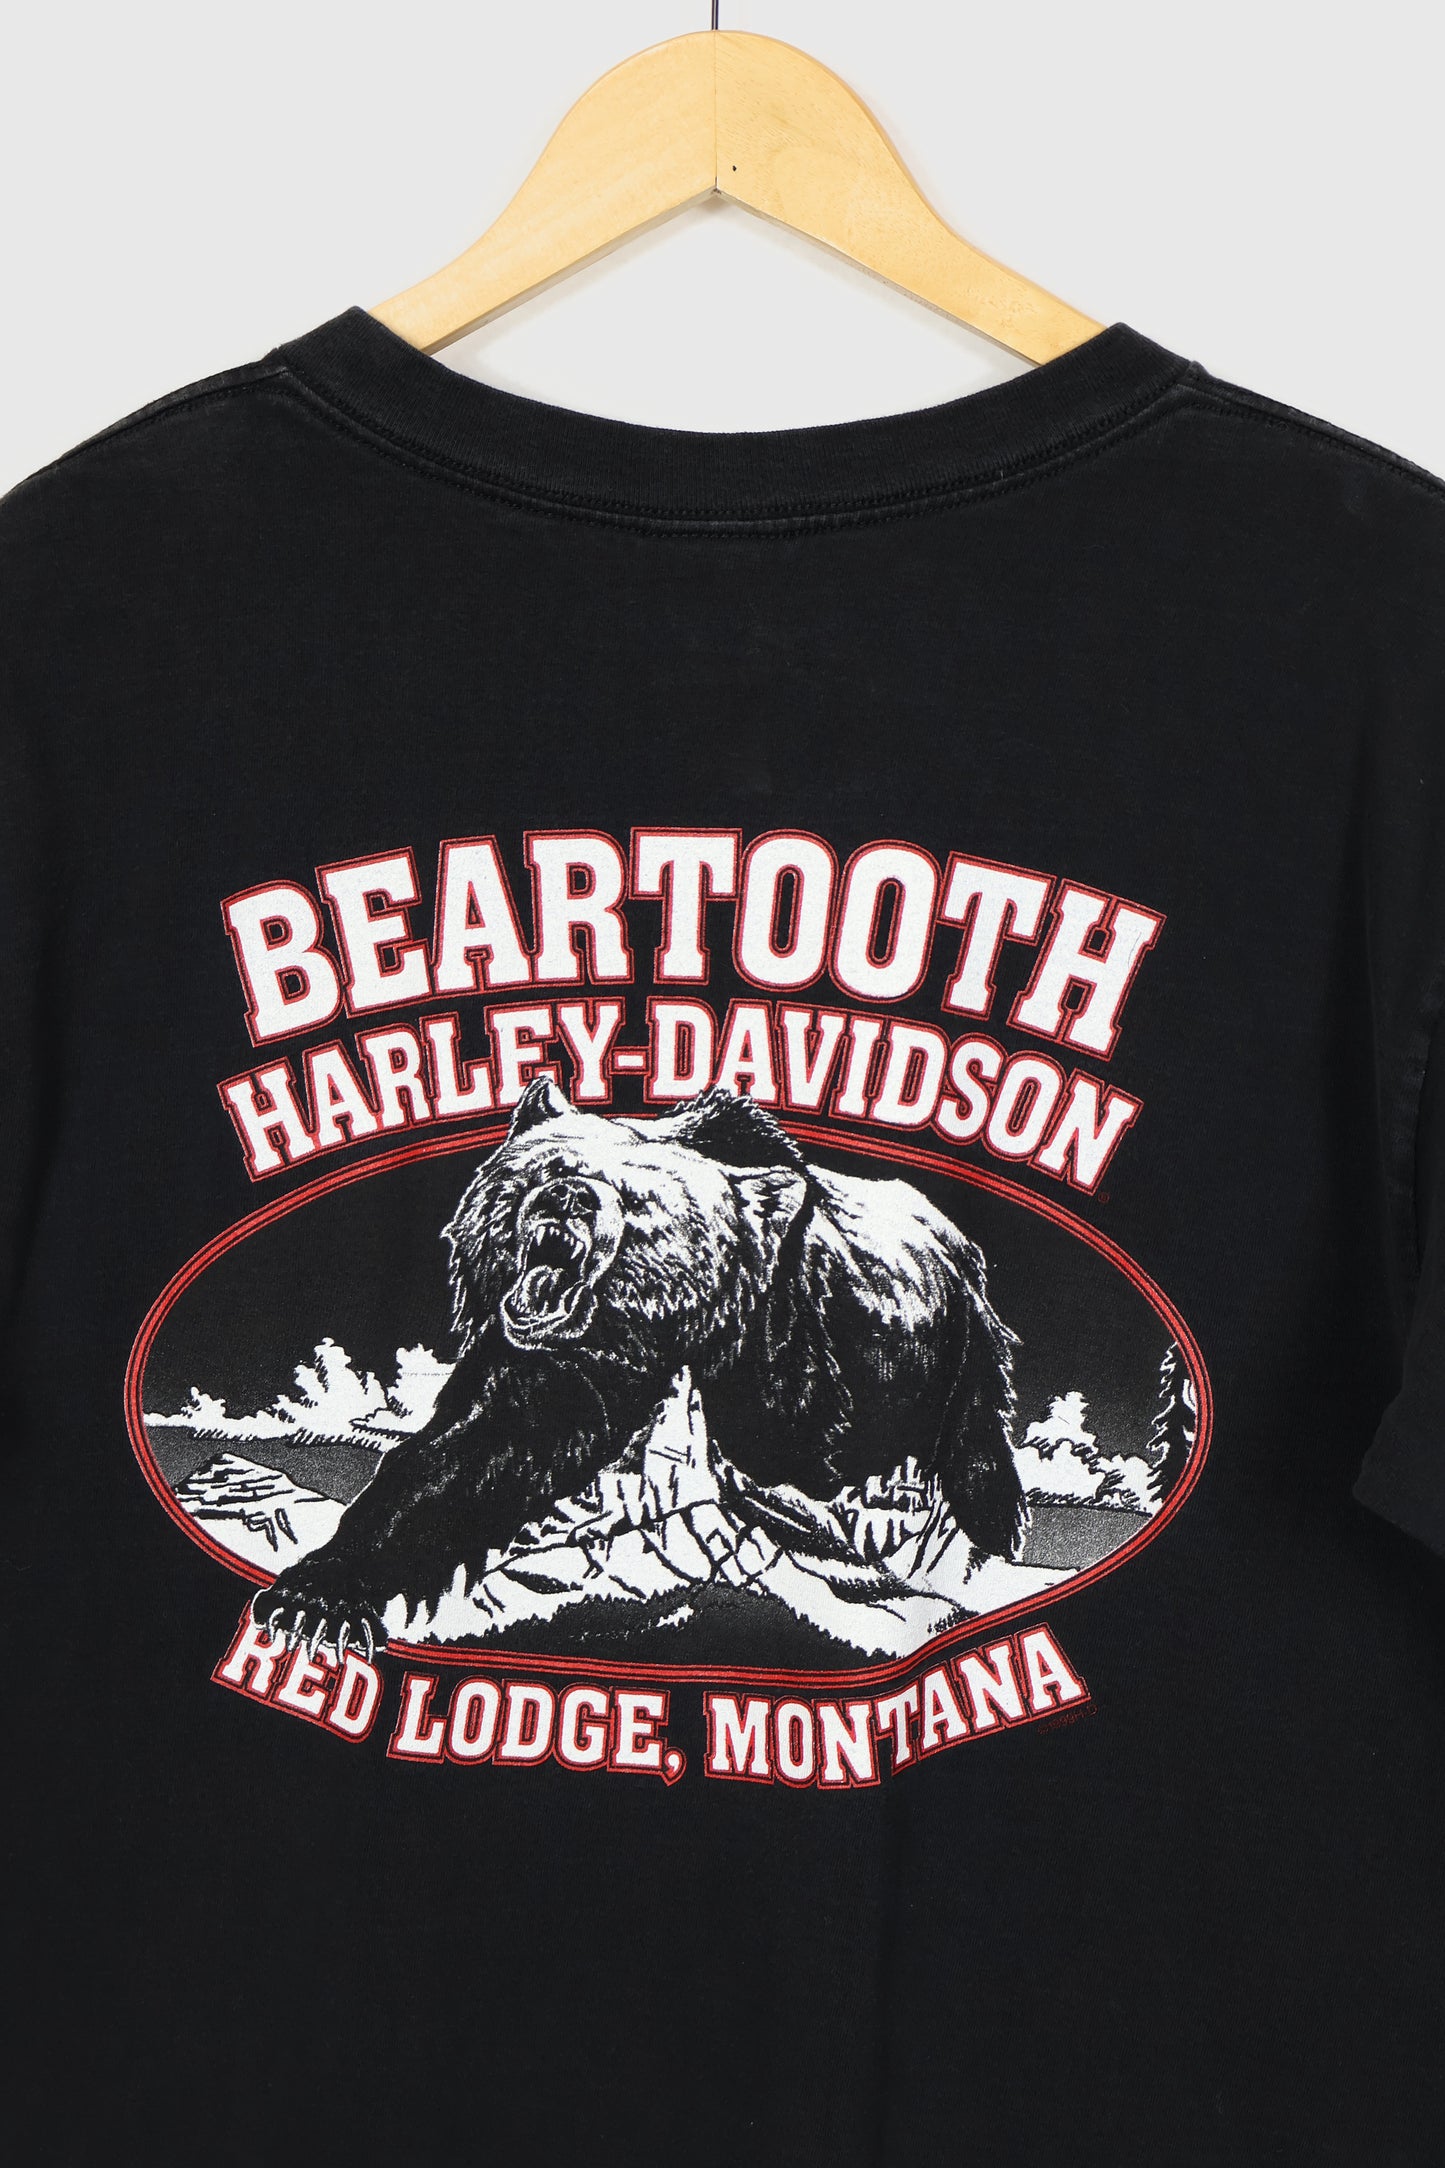 Harley Davidson Red Lodge, Montana Long Sleeve Tee